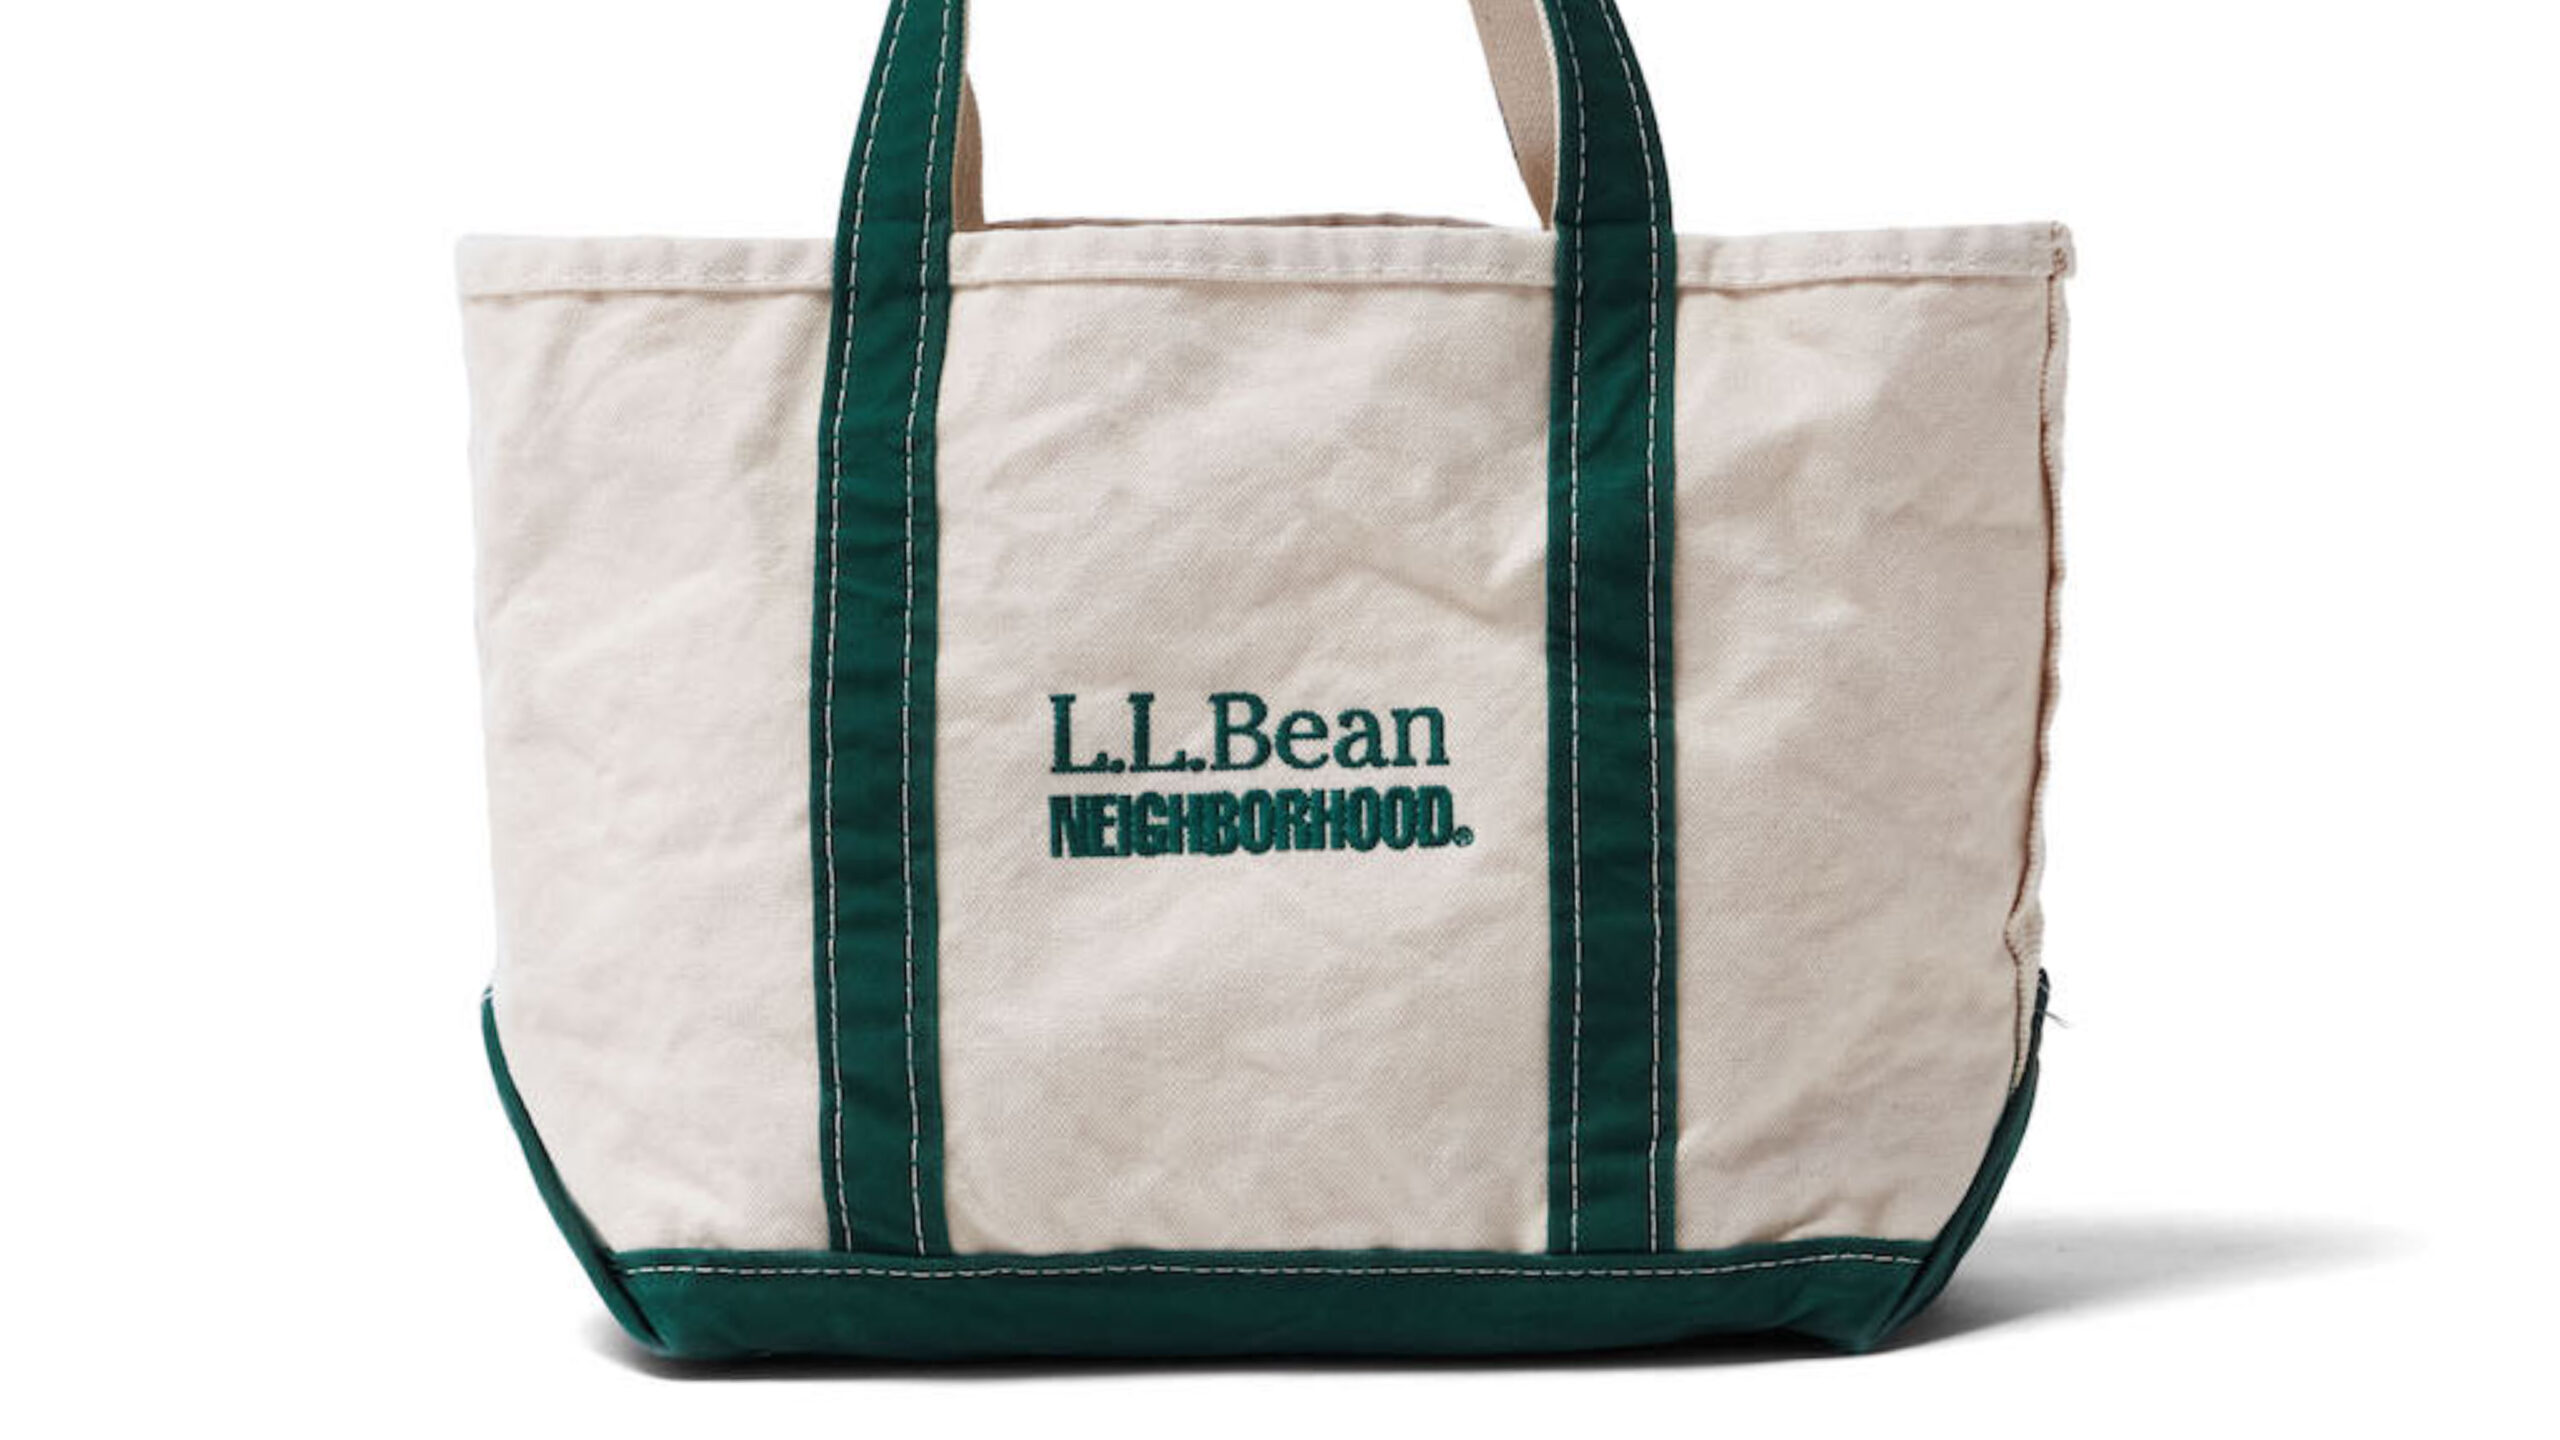 【値引き可】NEIGHBORHOOD x L.L.Bean コラボトートバッグ